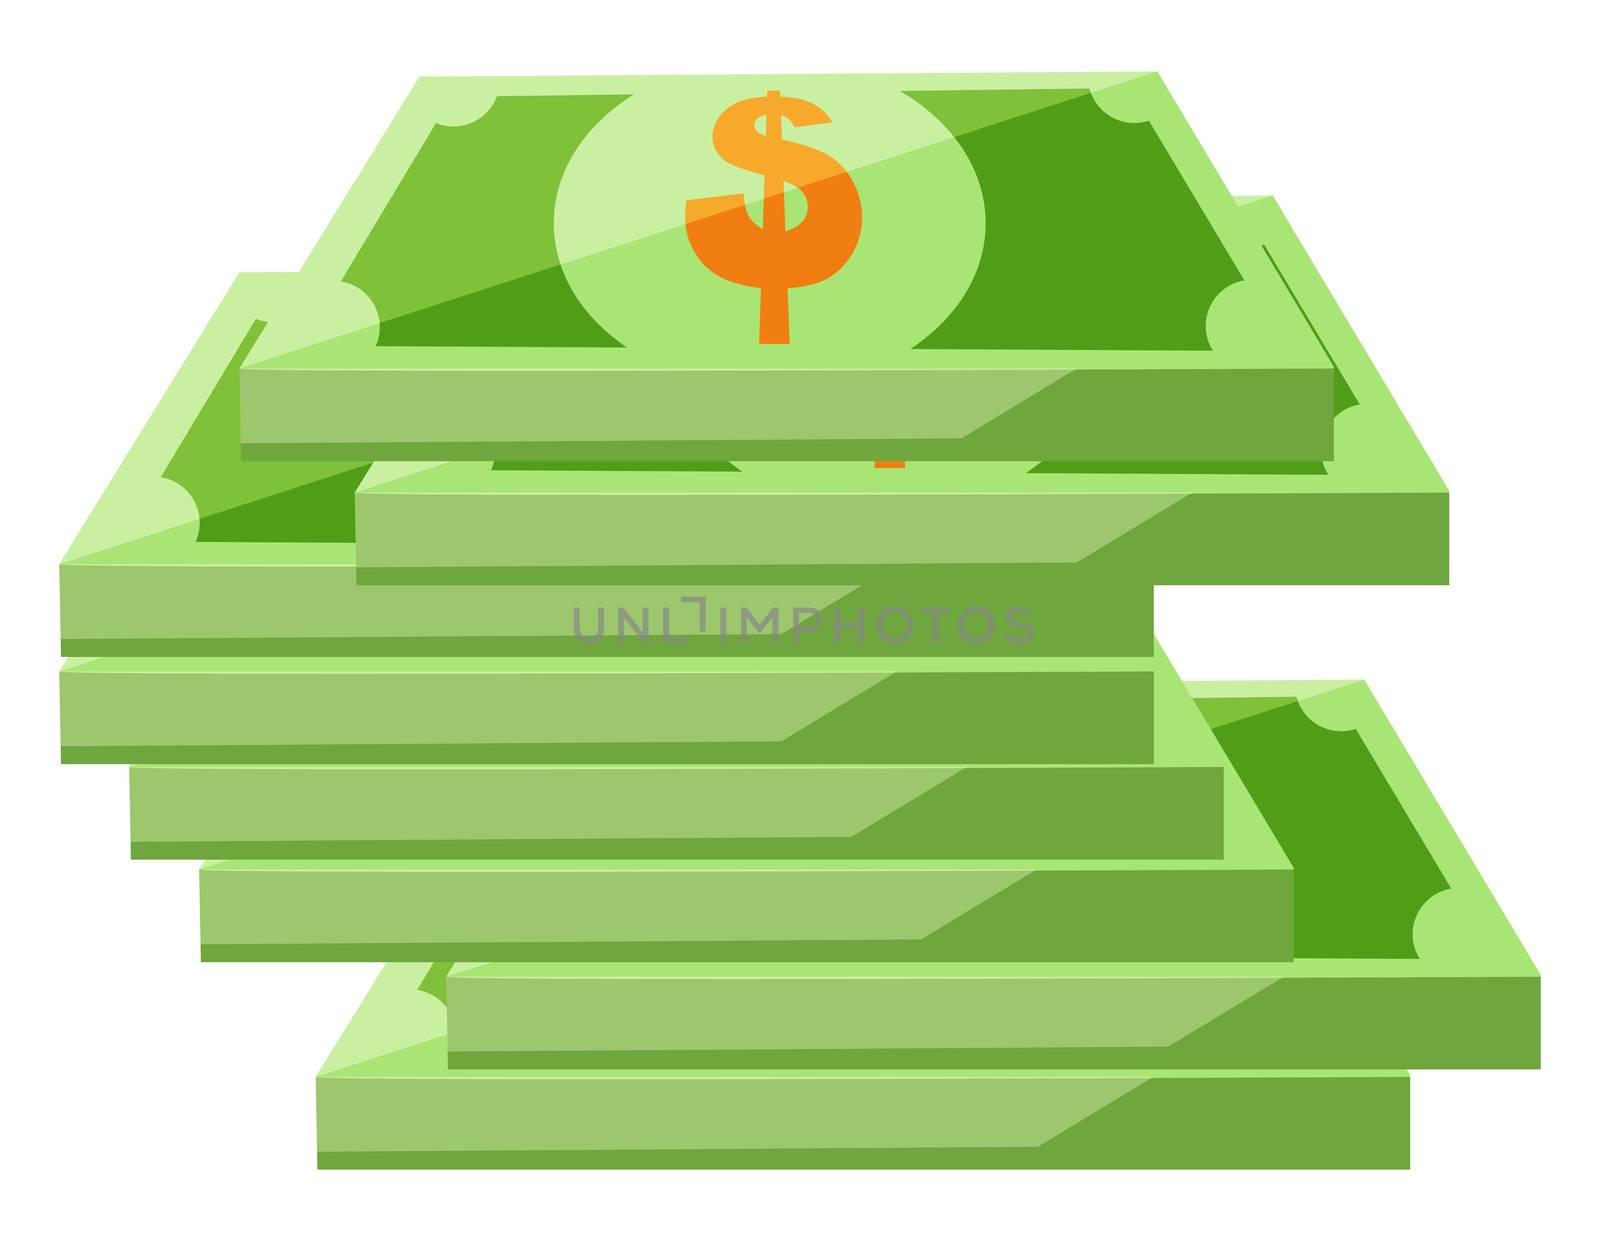 Paper money, illustration, vector on white background